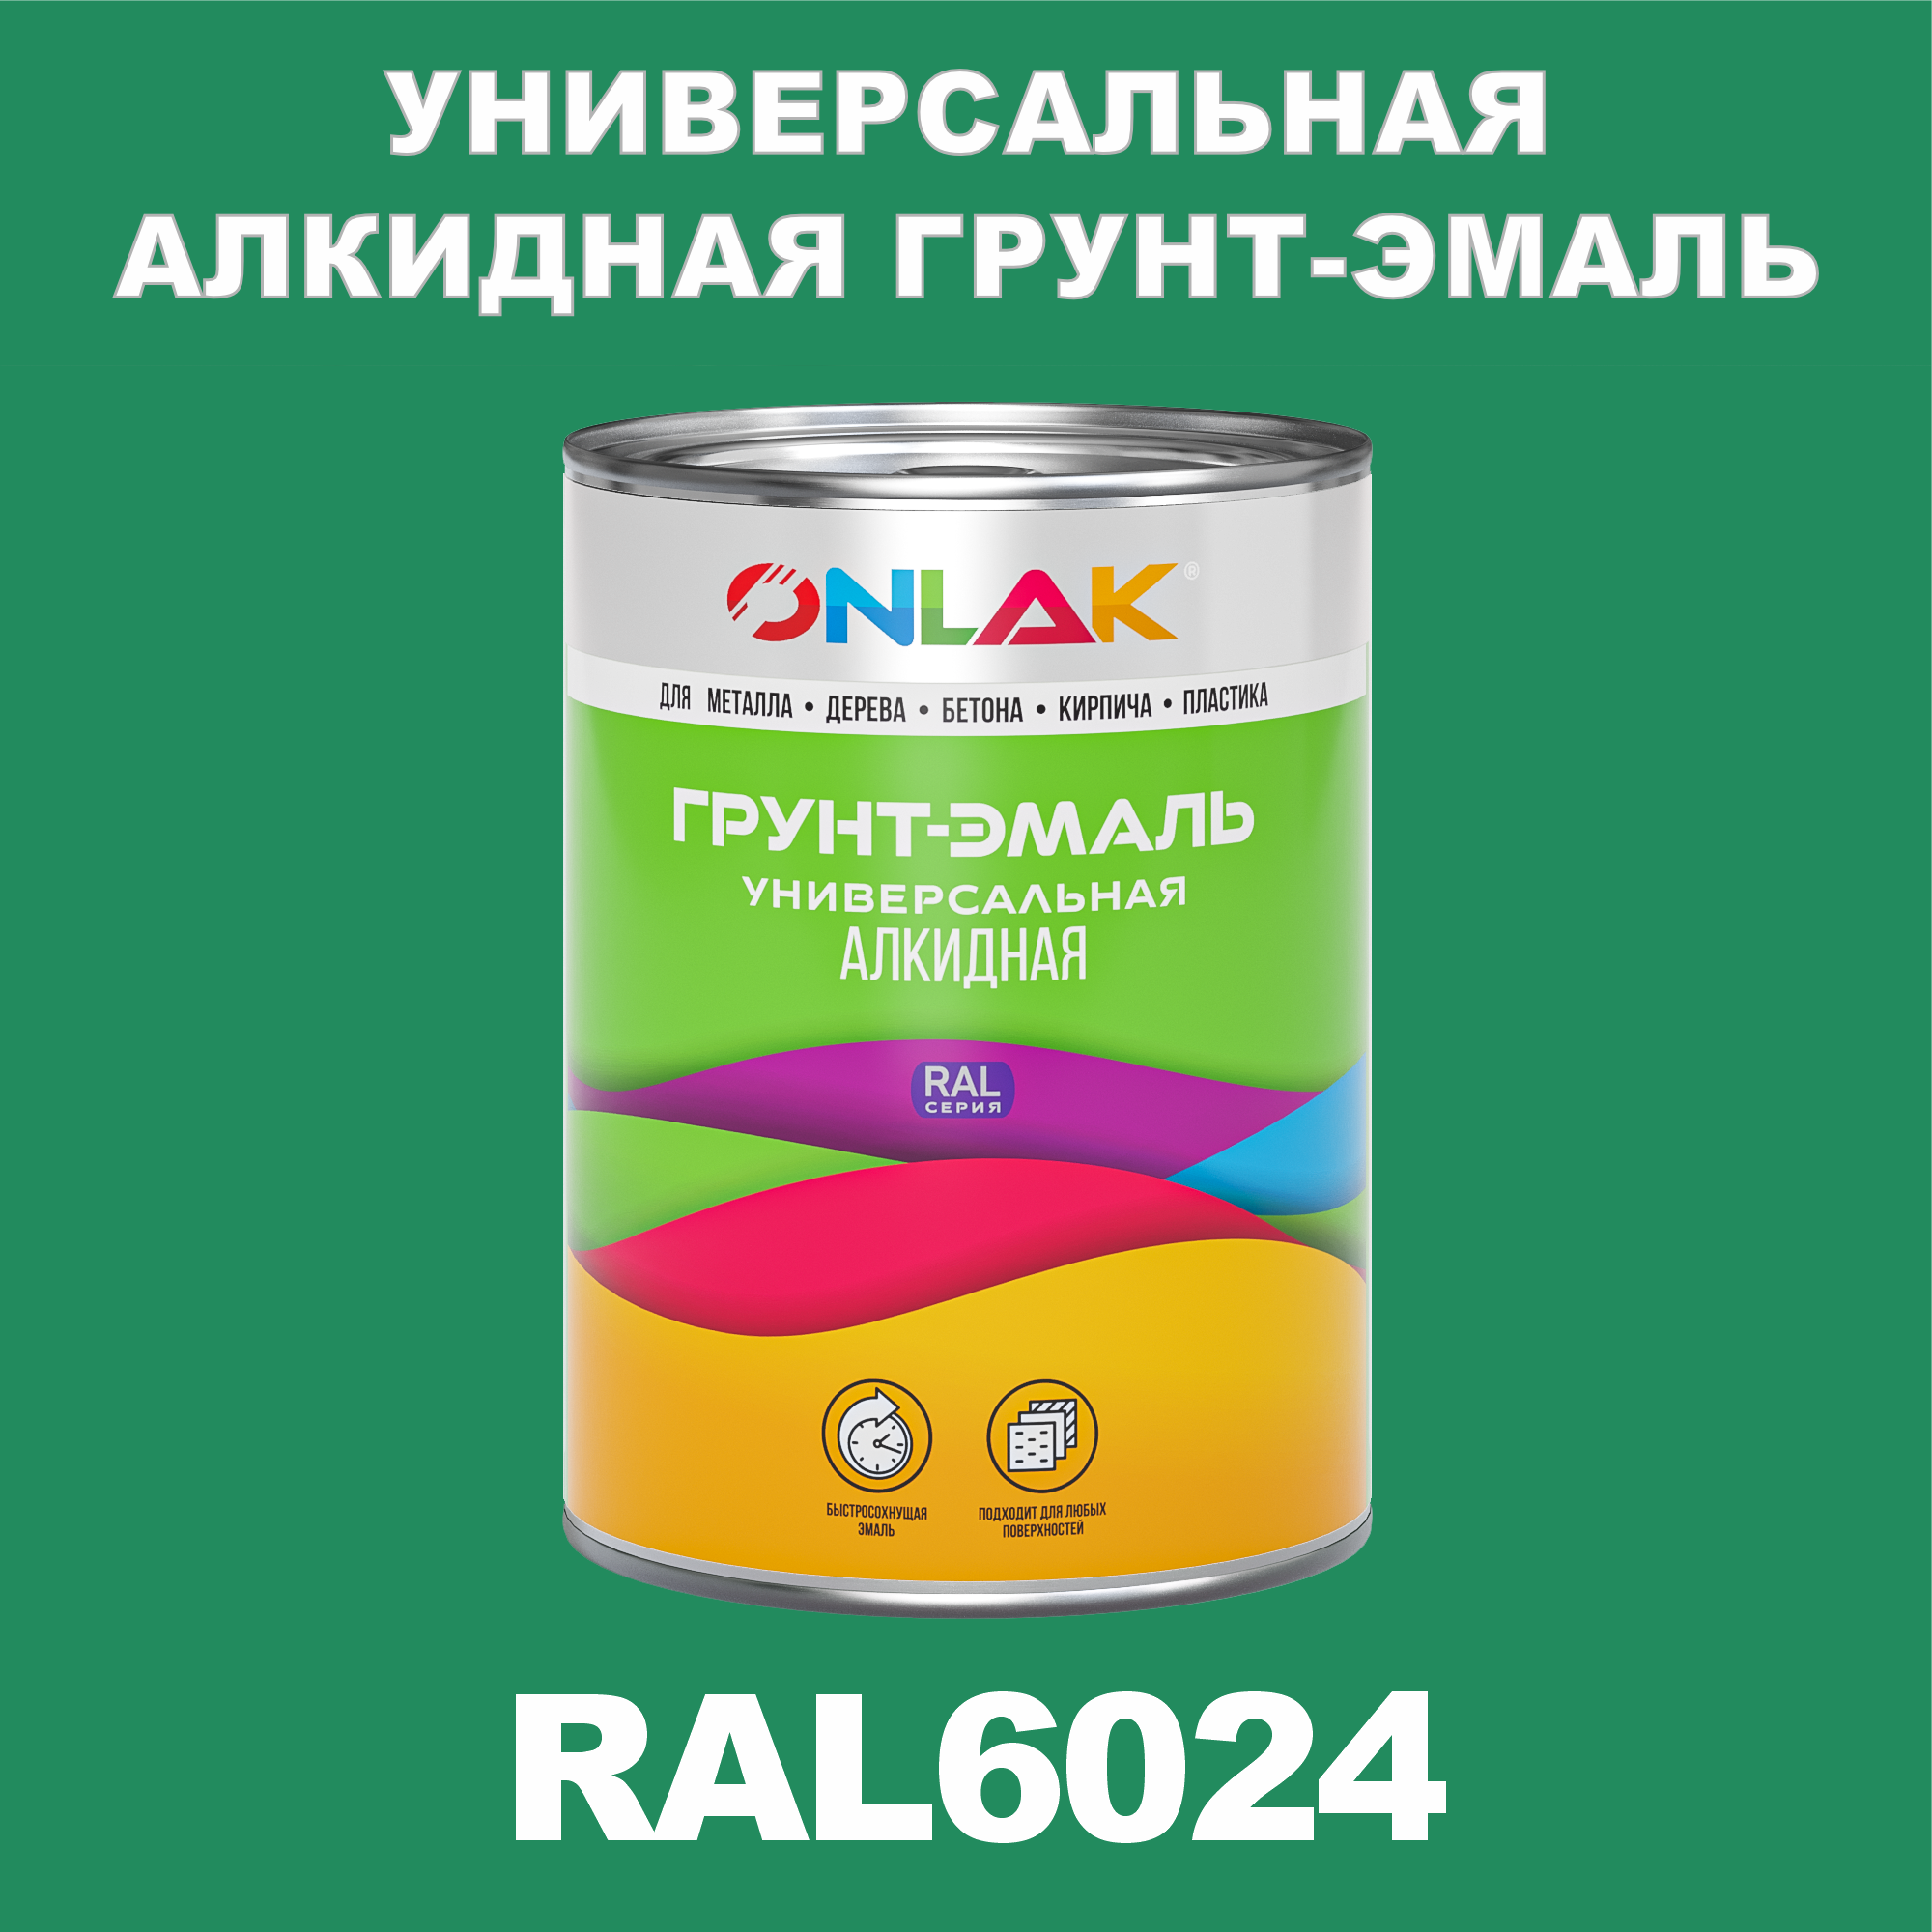 Грунт-эмаль ONLAK 1К RAL6024 антикоррозионная алкидная по металлу по ржавчине 1 кг грунт эмаль yollo по ржавчине алкидная серая 0 9 кг